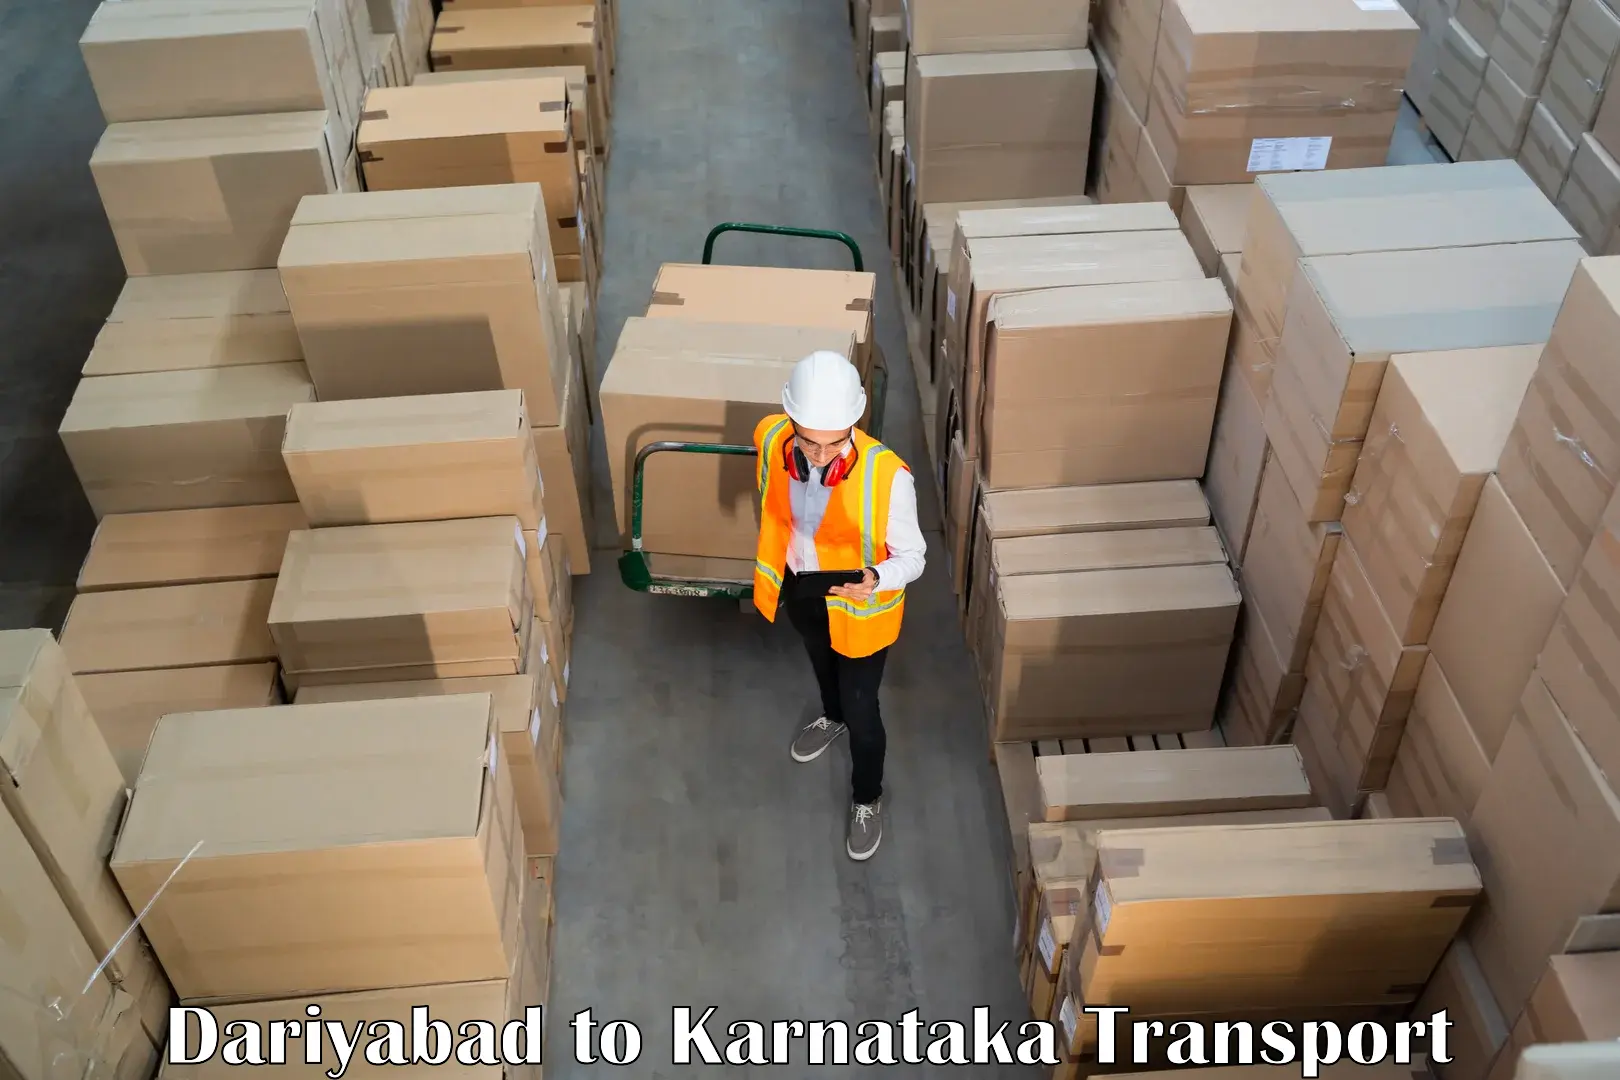 Commercial transport service Dariyabad to Kolar